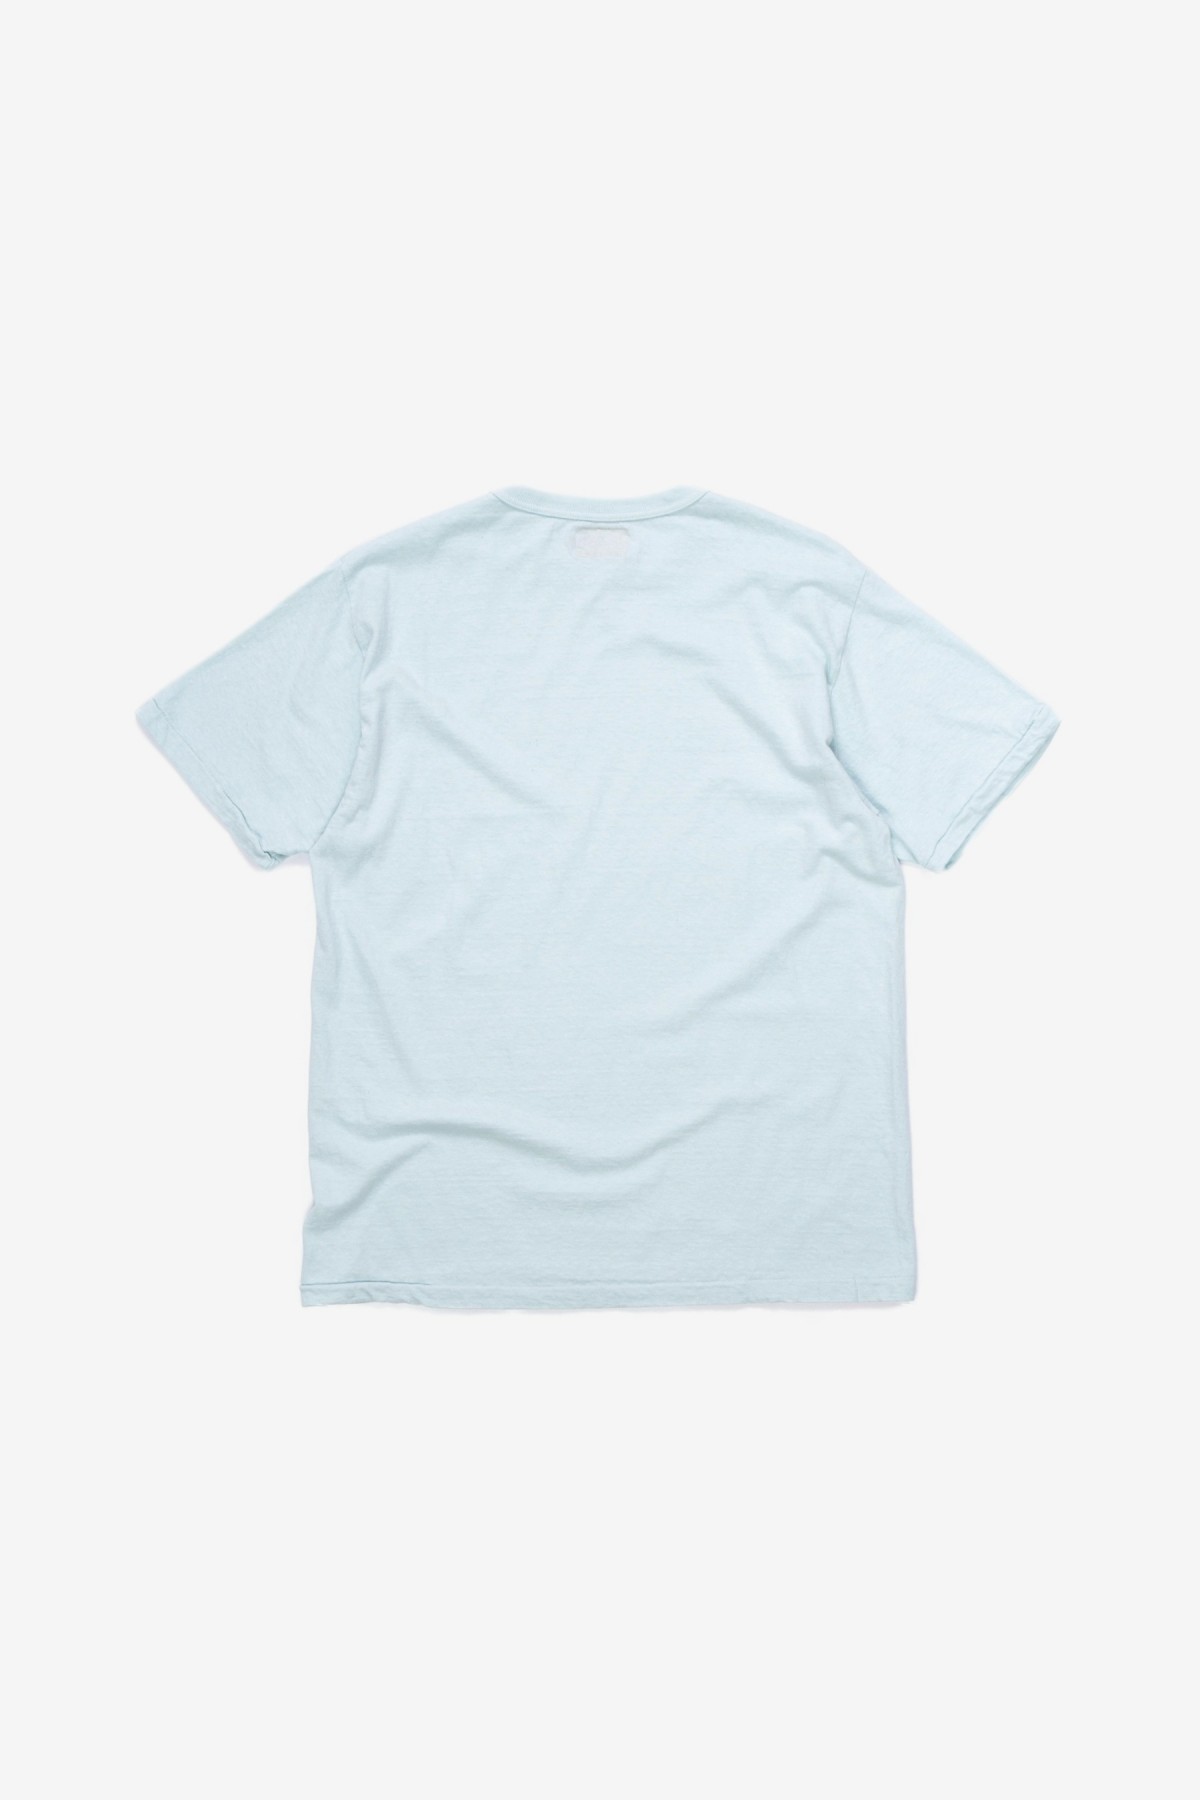 Sunray Sportswear Haleiwa Short Sleeve T-Shirt in Pastel Blue